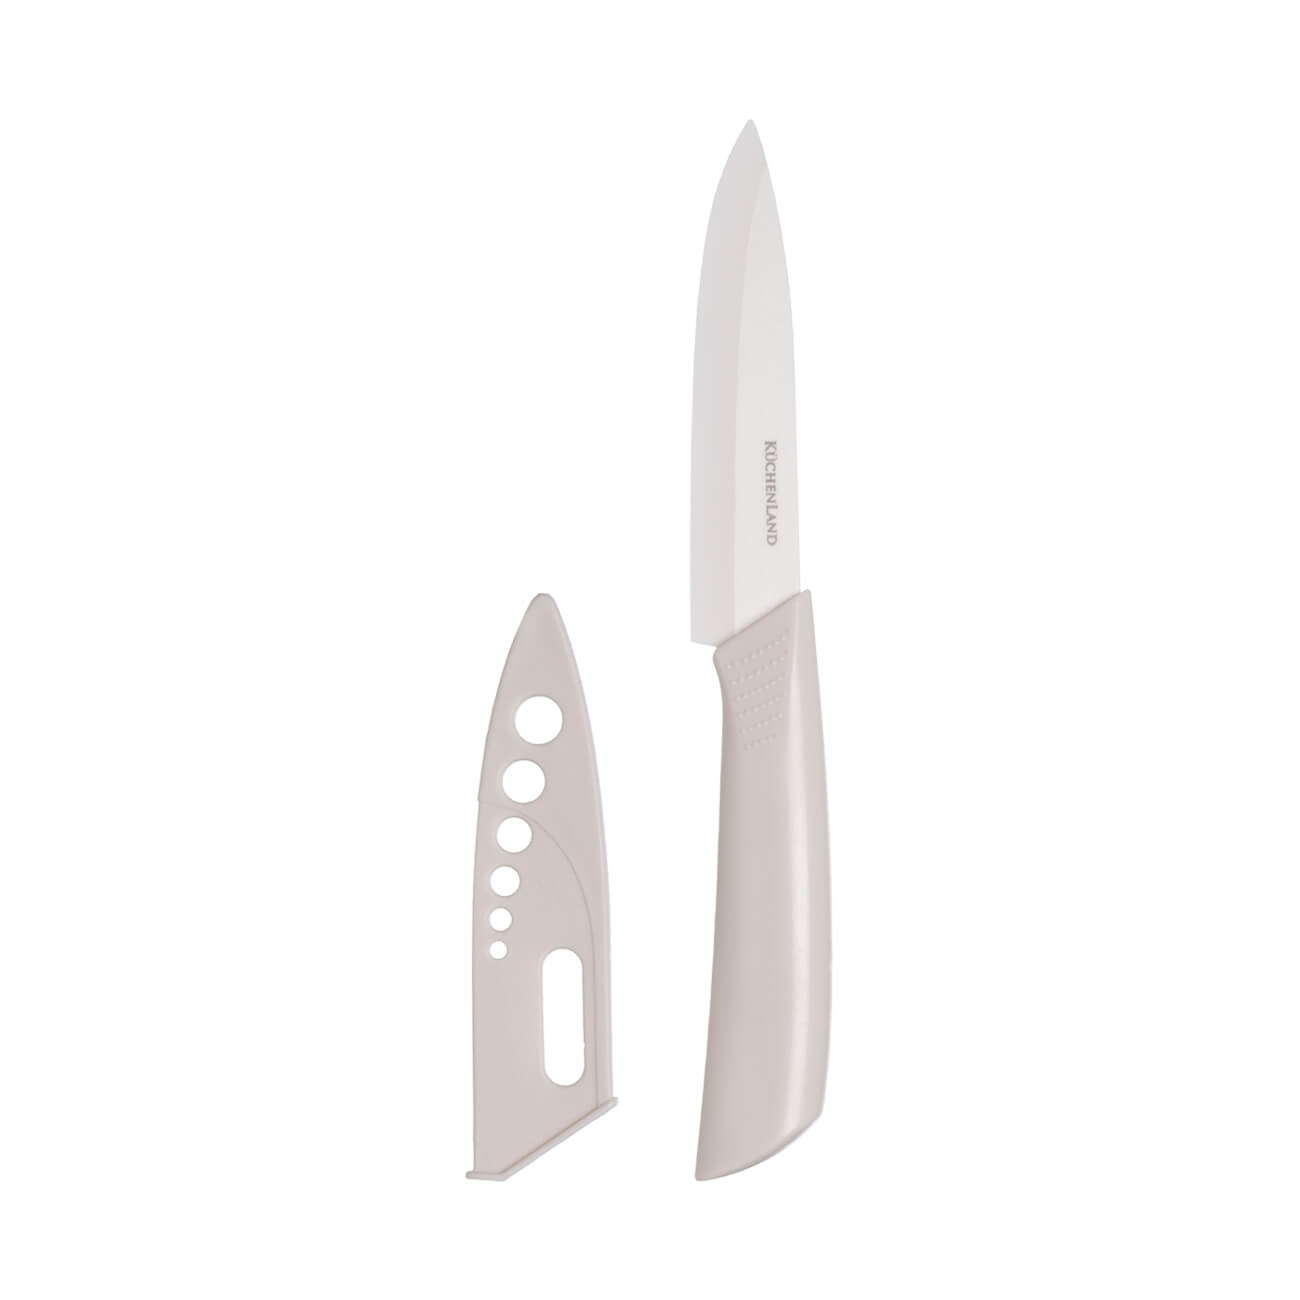 Нож для чистки овощей, 10 см, с чехлом, керамика/пластик, молочный, Regular